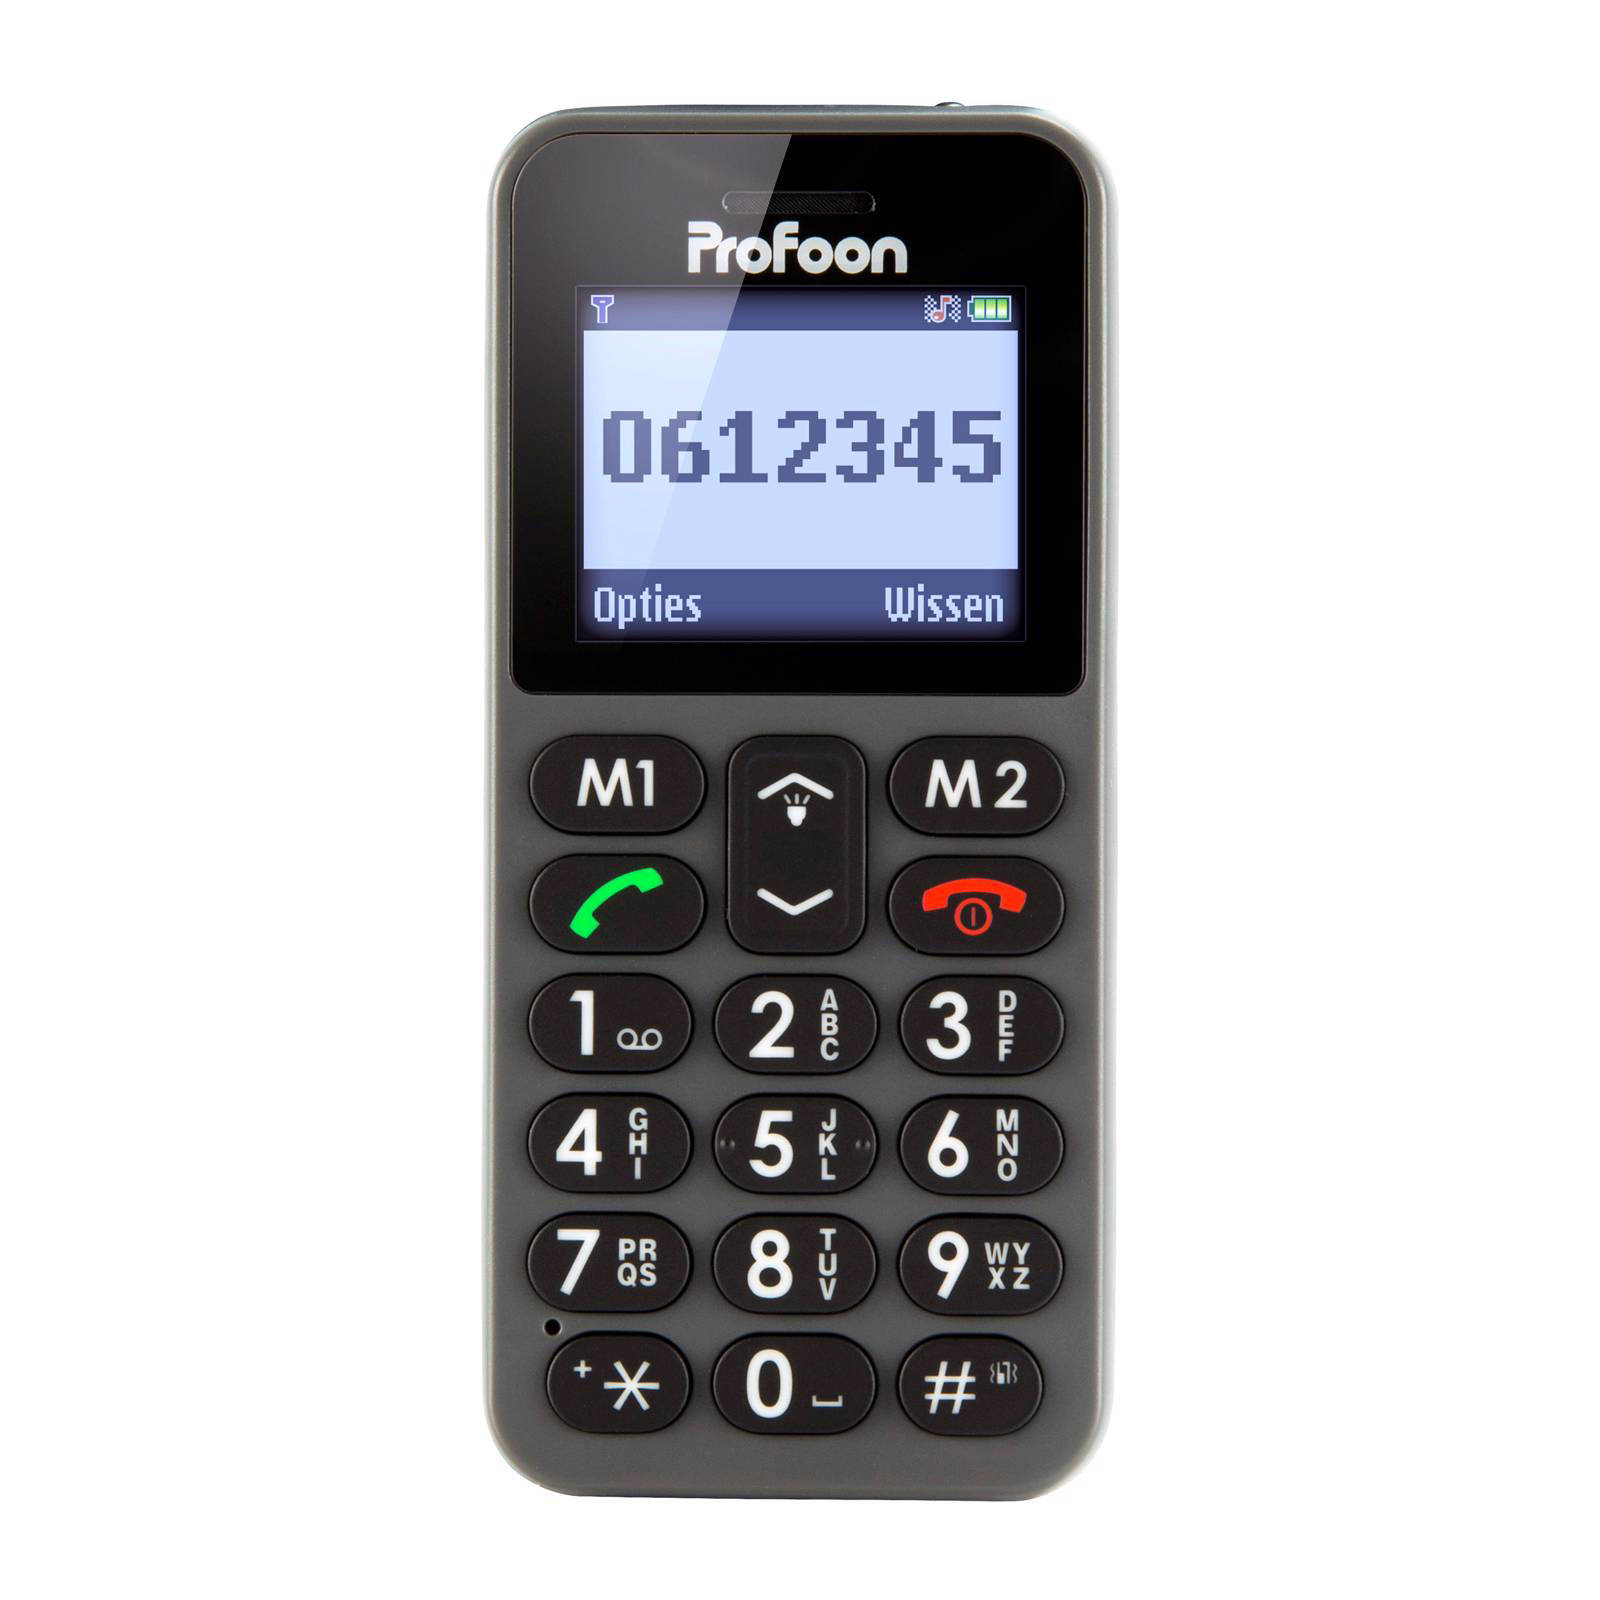 Profoon Mobiele Telefoon Met Sos Noodknop Pm 778 Grijs online kopen